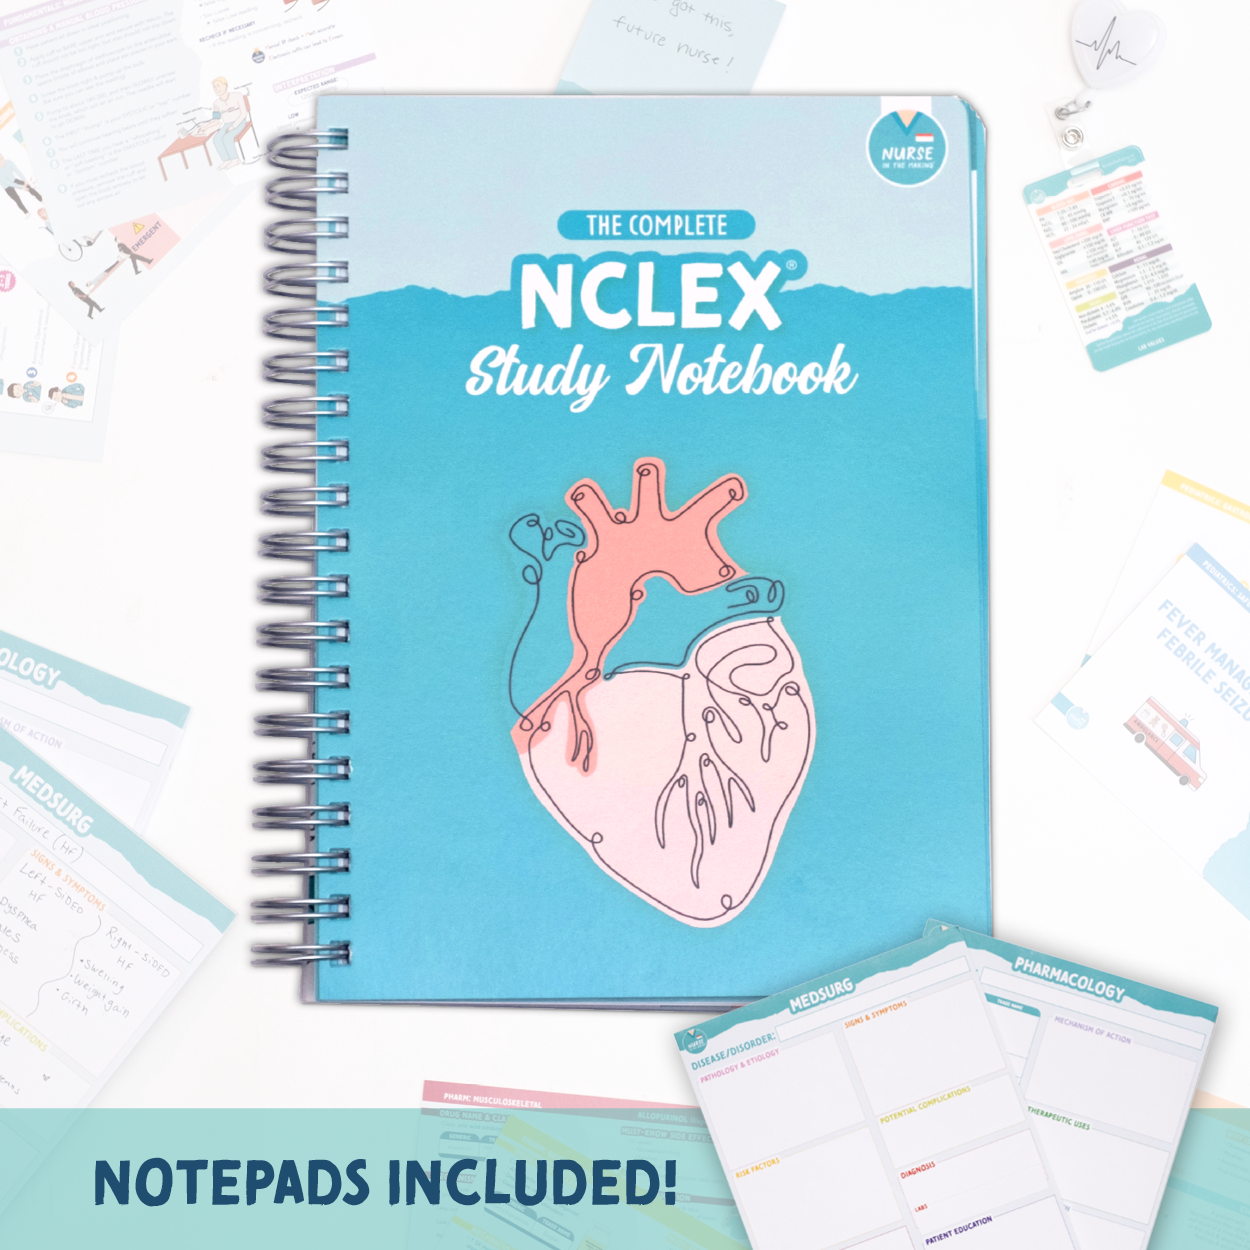 NCLEX Study Notebook